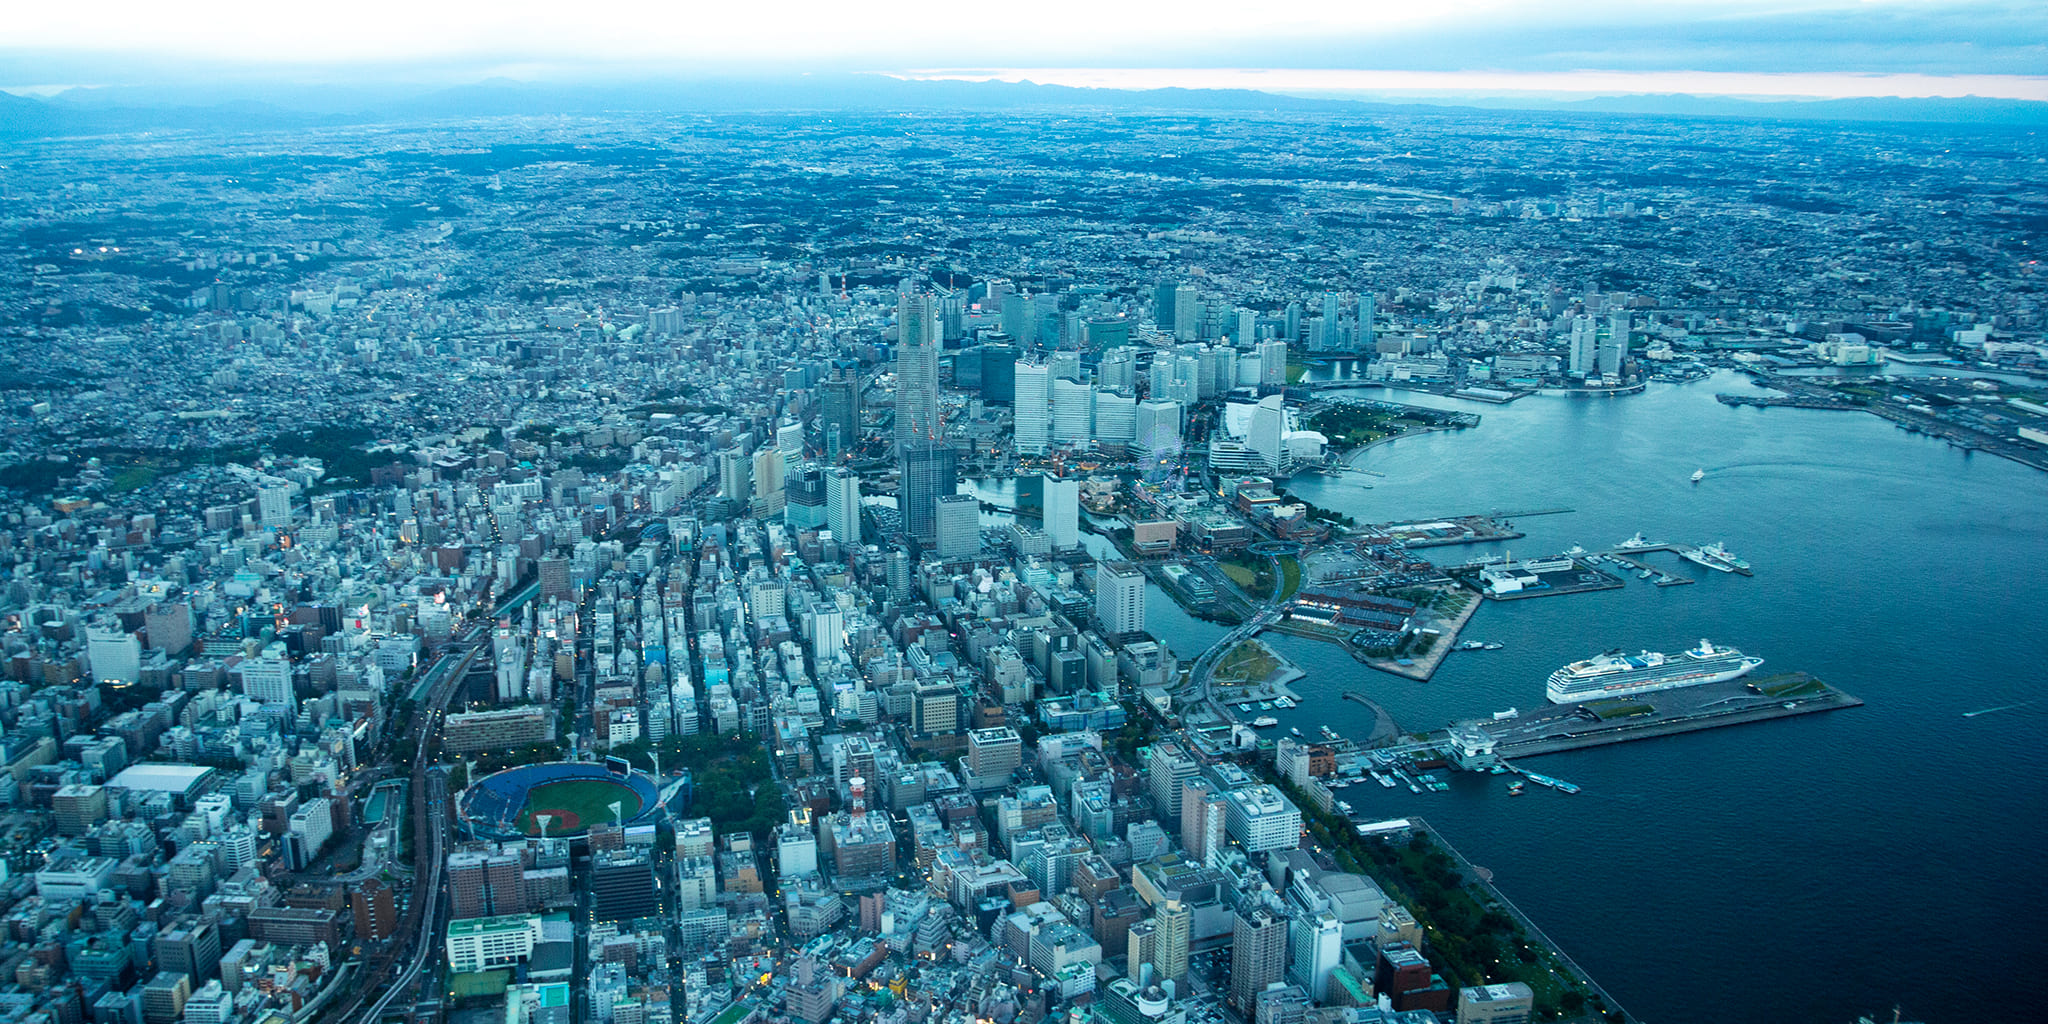 ヘリコプターで東京上空をフライトして見えるみなとみらい